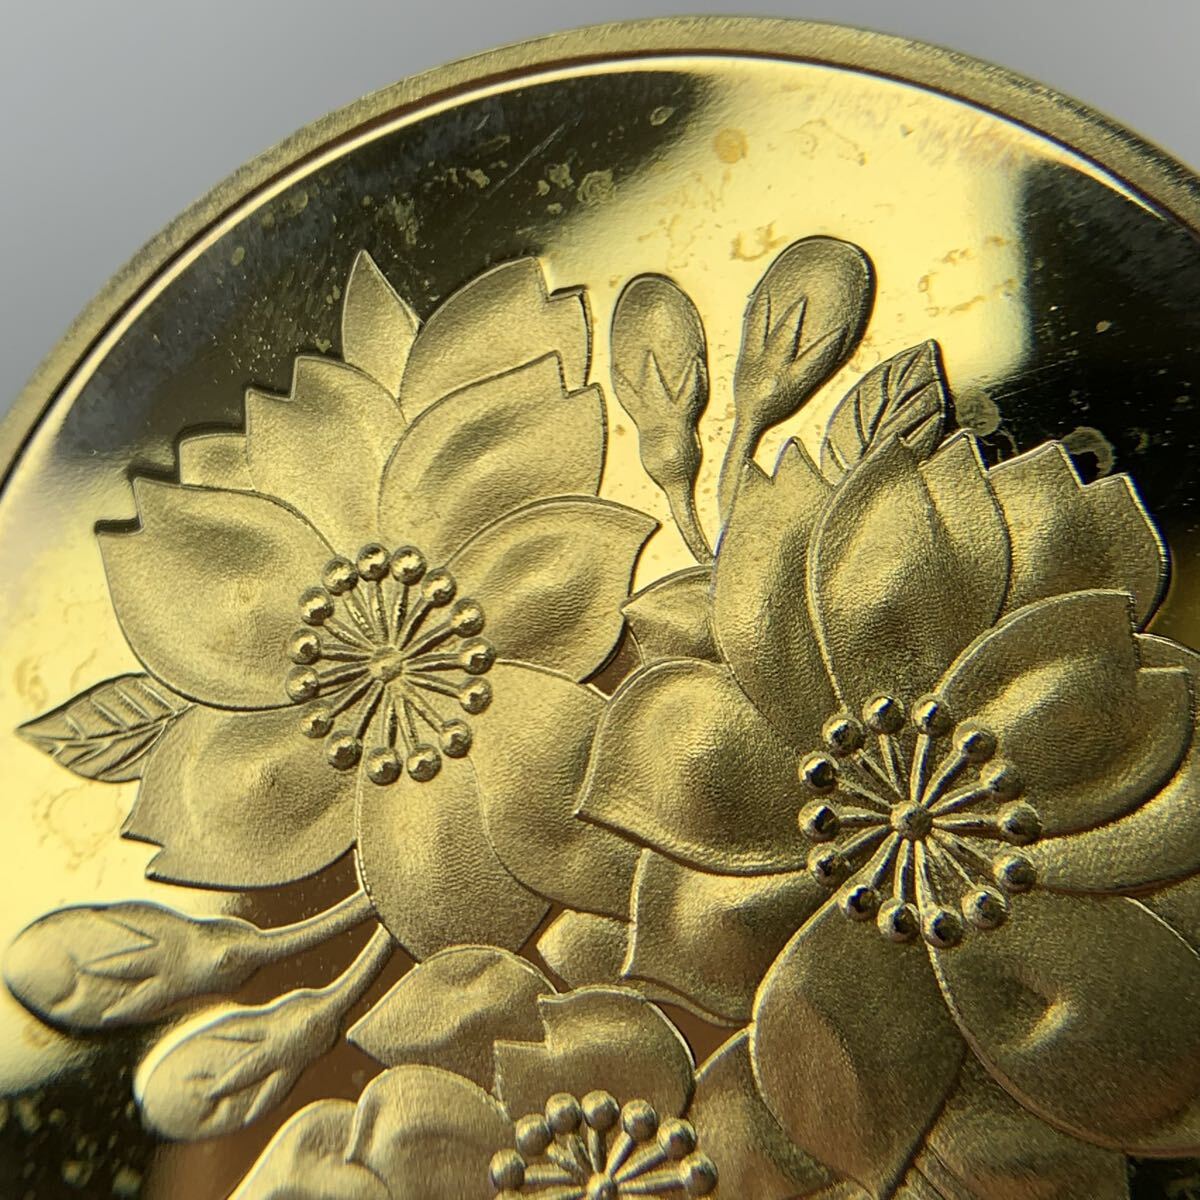 日本古銭 鳳凰菊 桜の女神 約40.1*3mm28.90g 天皇陛下御在位記念メダル 一円貨幣 硬貨骨董品コイン 参考品 h19の画像5